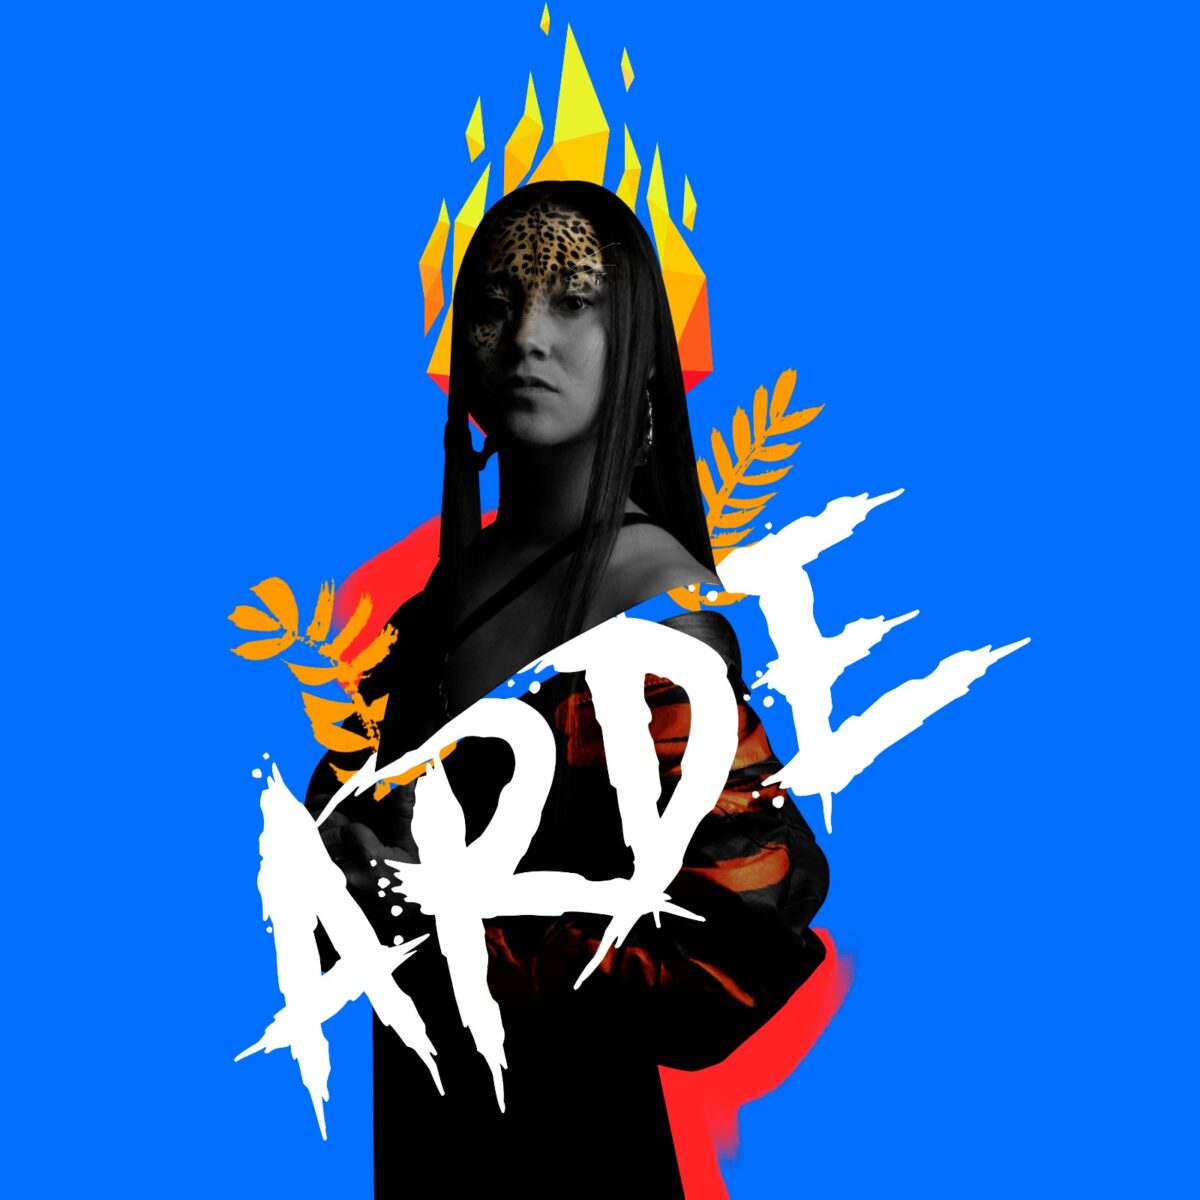 La rapera colombiana KcK le rinde homenaje al fuego con «Arde»